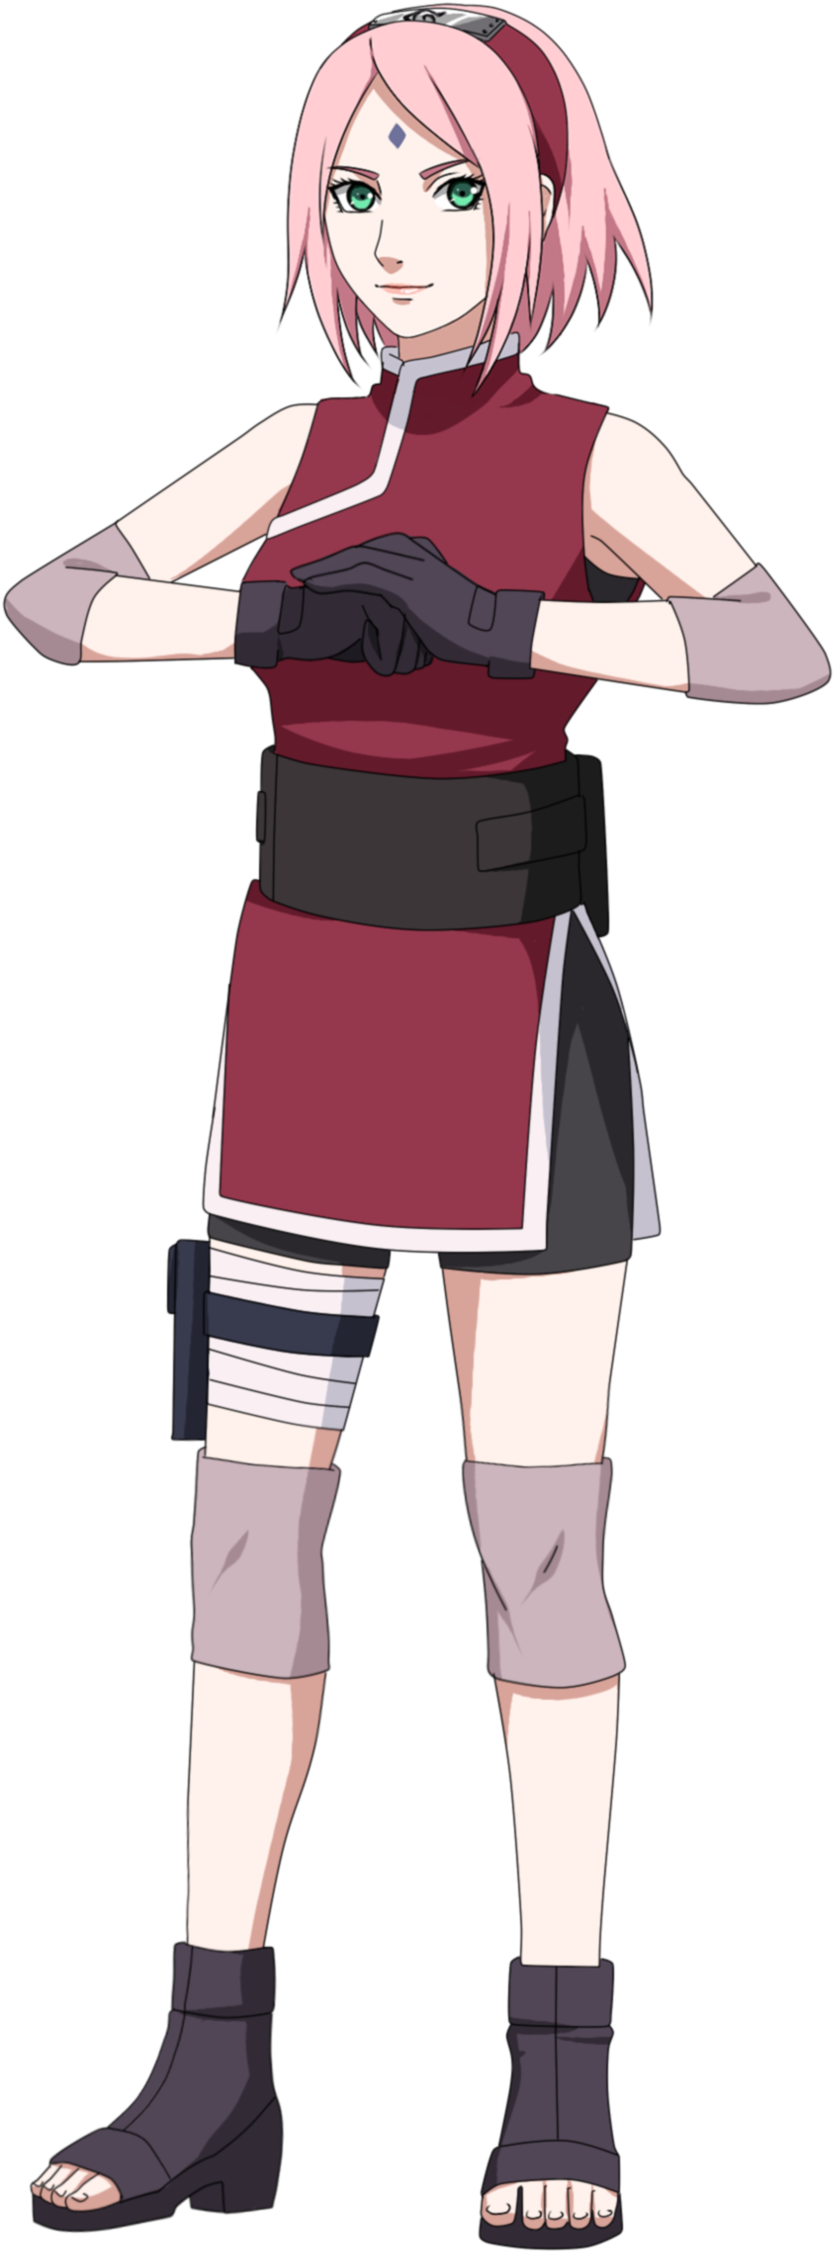 Anime Ninja Girl Standing Pose